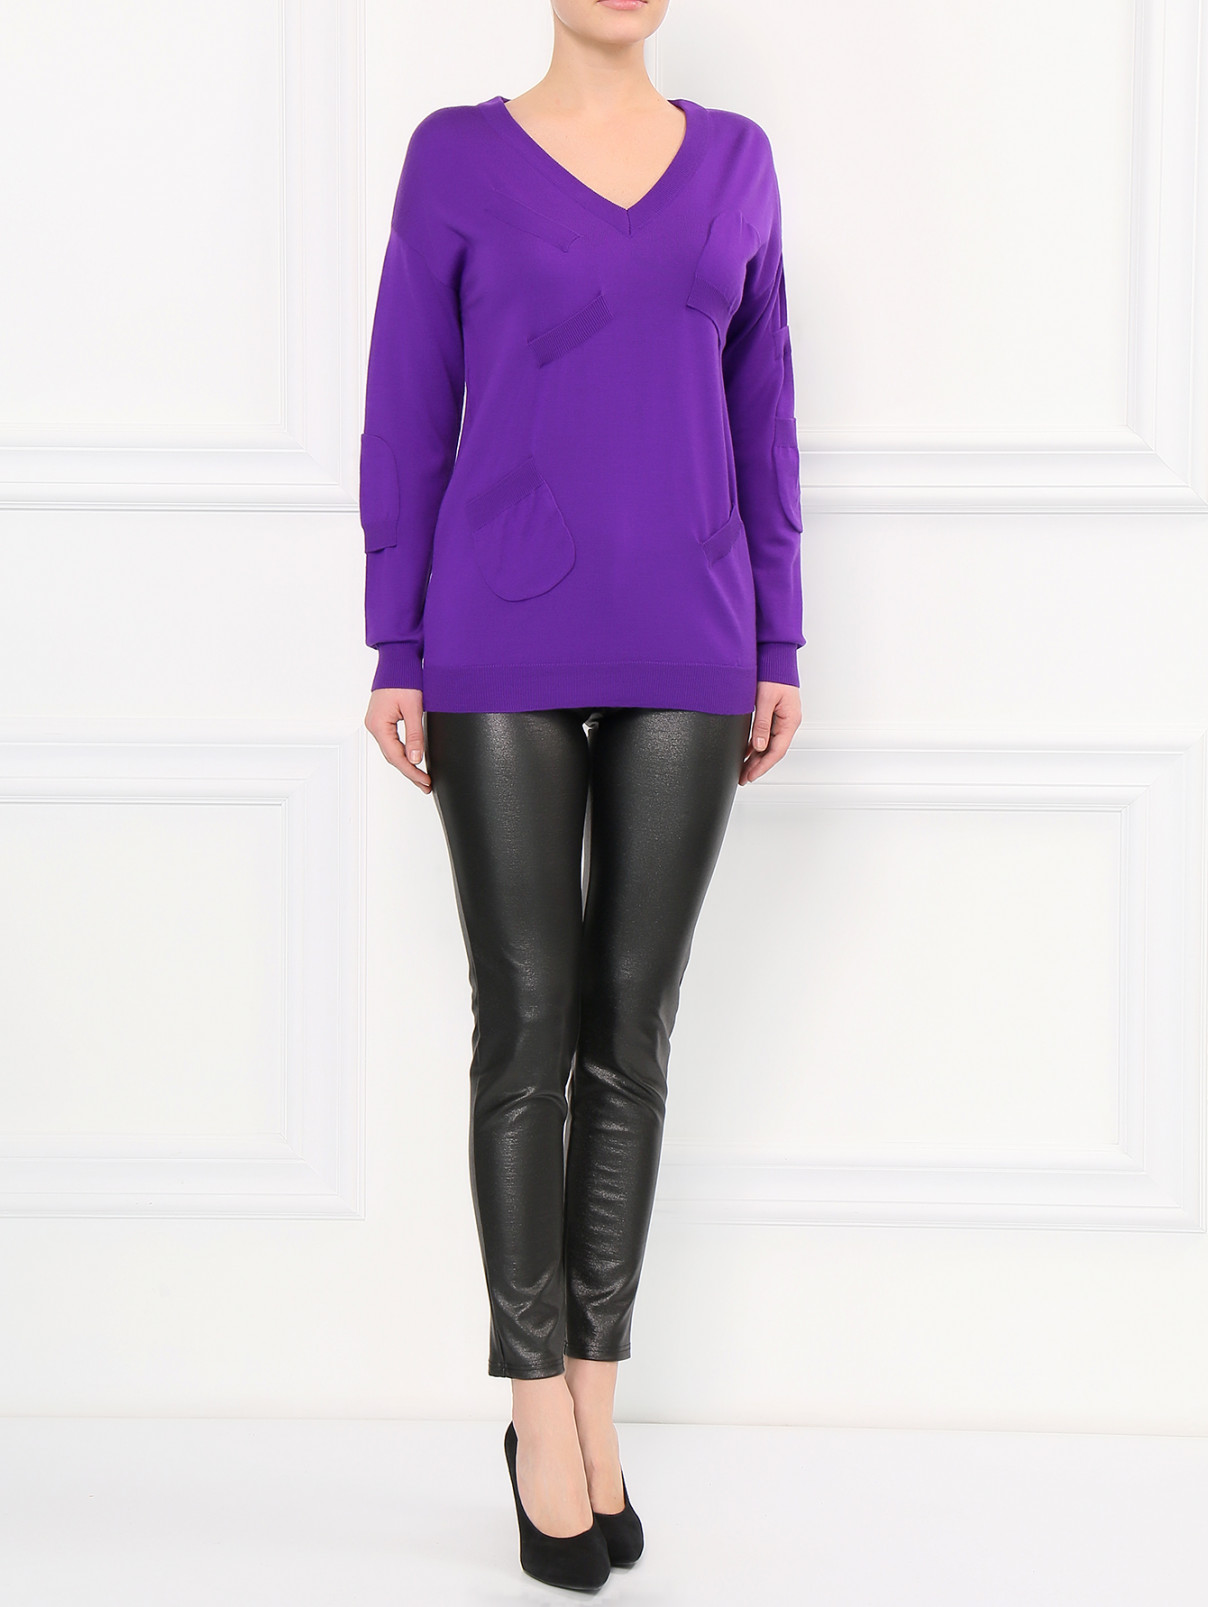 Удлиненный джемпер из шерсти с V-образным вырезом Moschino Boutique  –  Модель Общий вид  – Цвет:  Фиолетовый